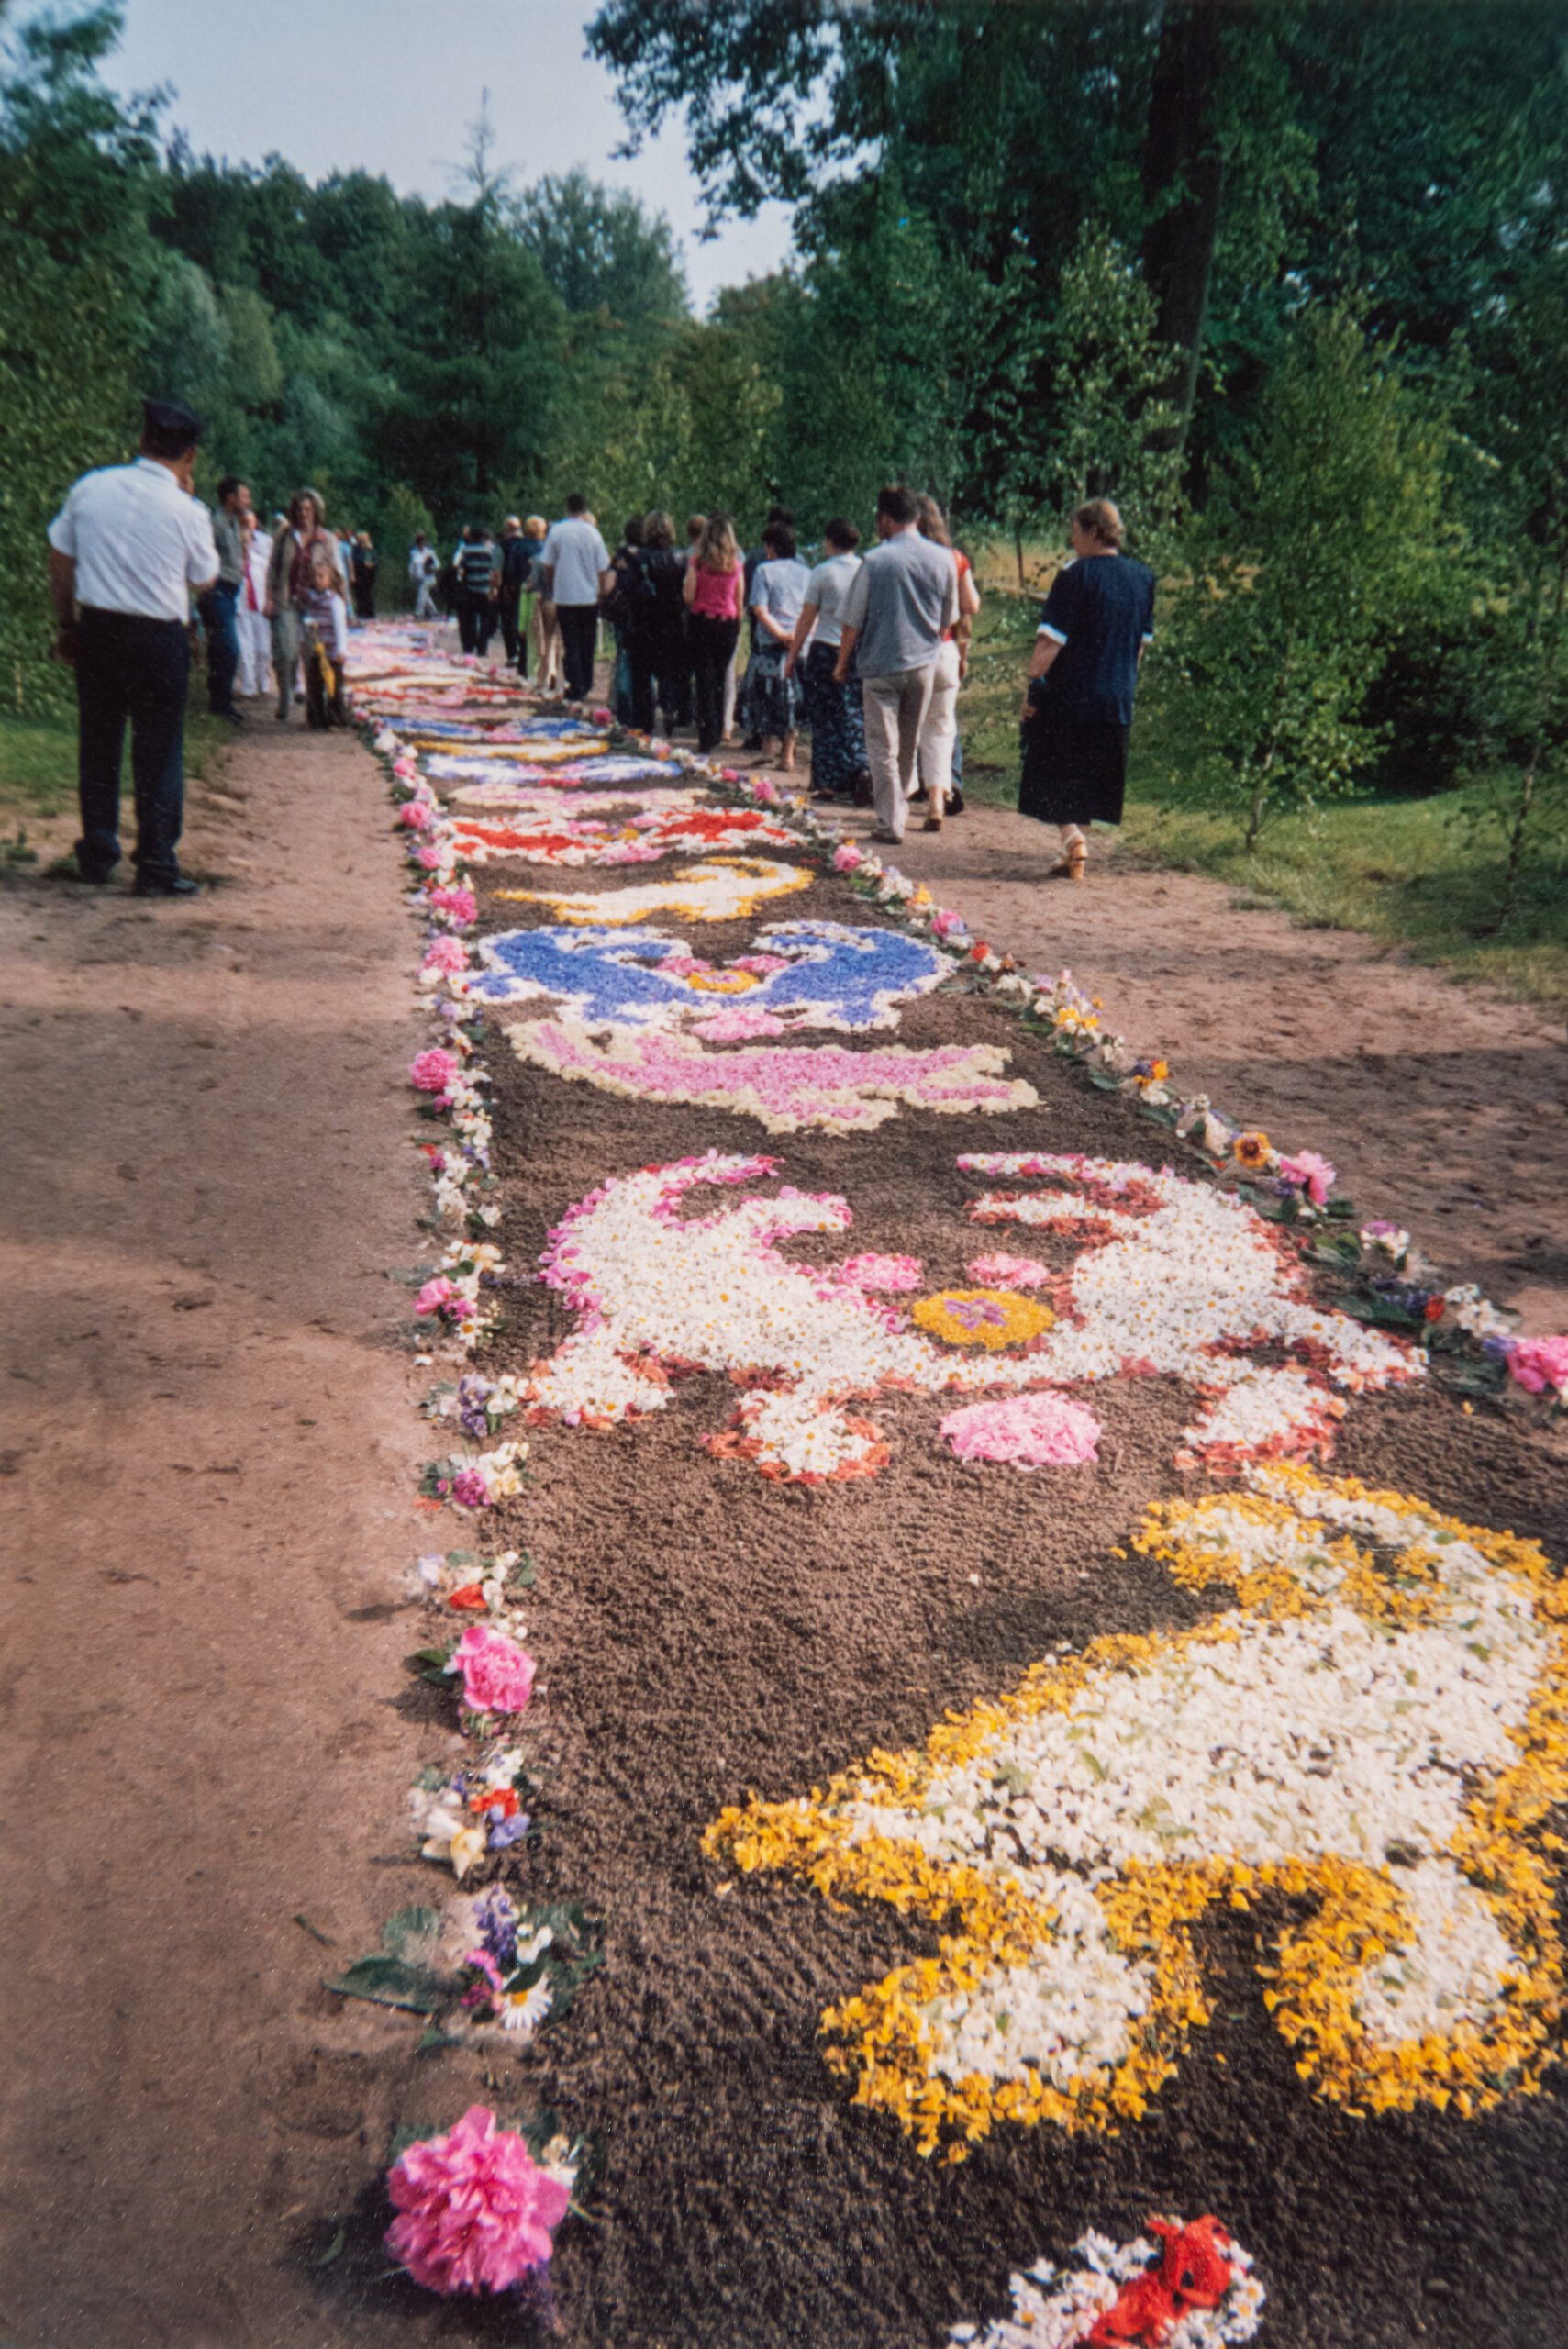 Kwietny dywan usypany na trasie procesji, z wielokolorowych kwiatów na piaskowej drodze.